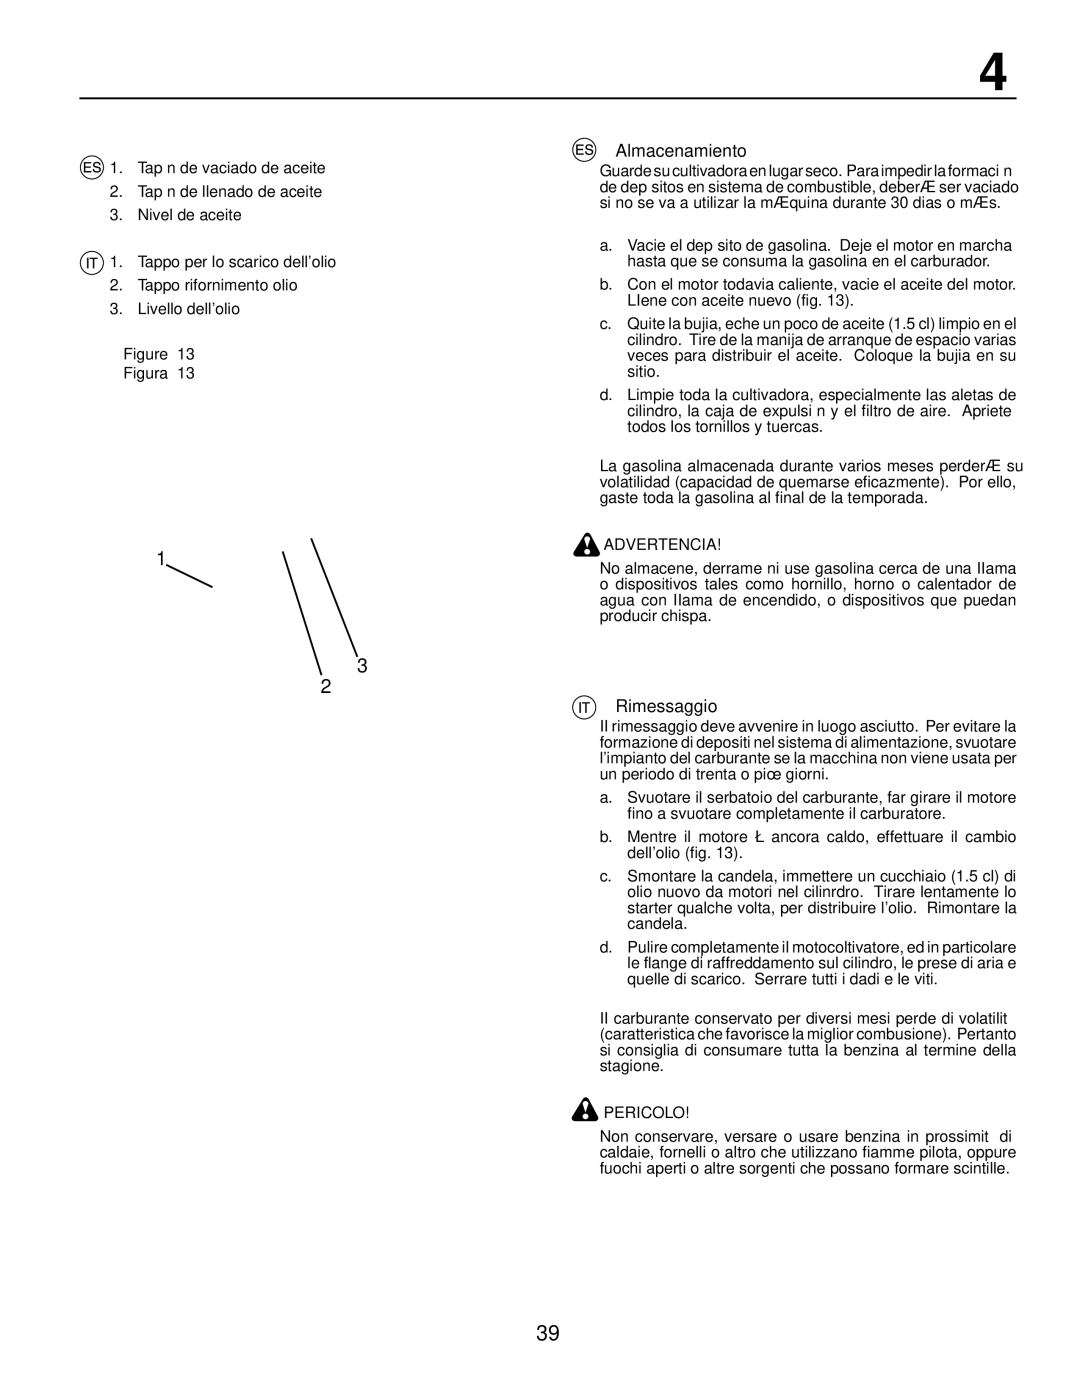 McCulloch MRT6 instruction manual Almacenamiento, Rimessaggio 